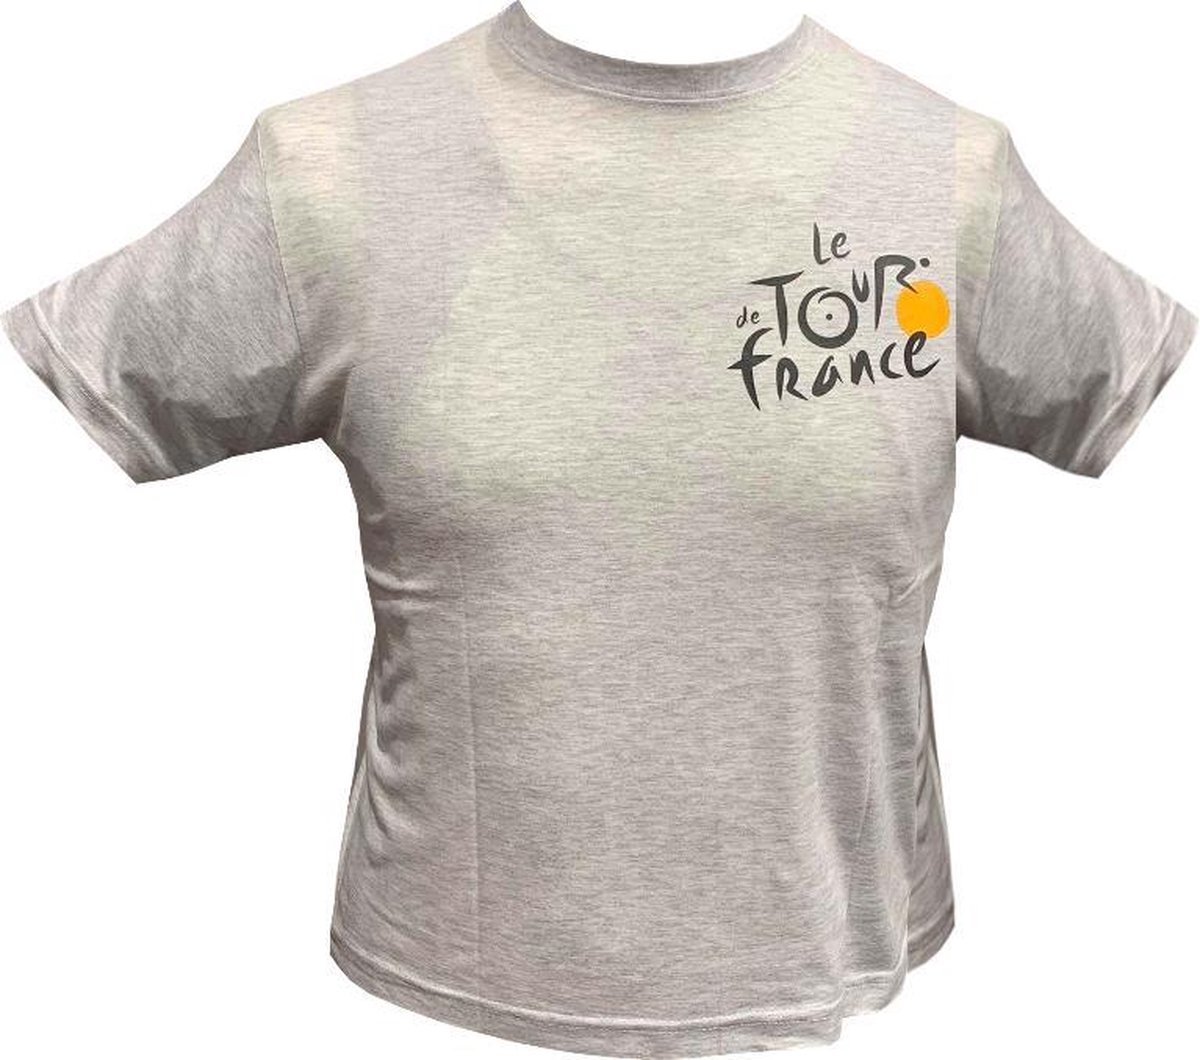 Tour de France Officiële Vintage T-shirt Grijs - Maat 10/12 Jaar